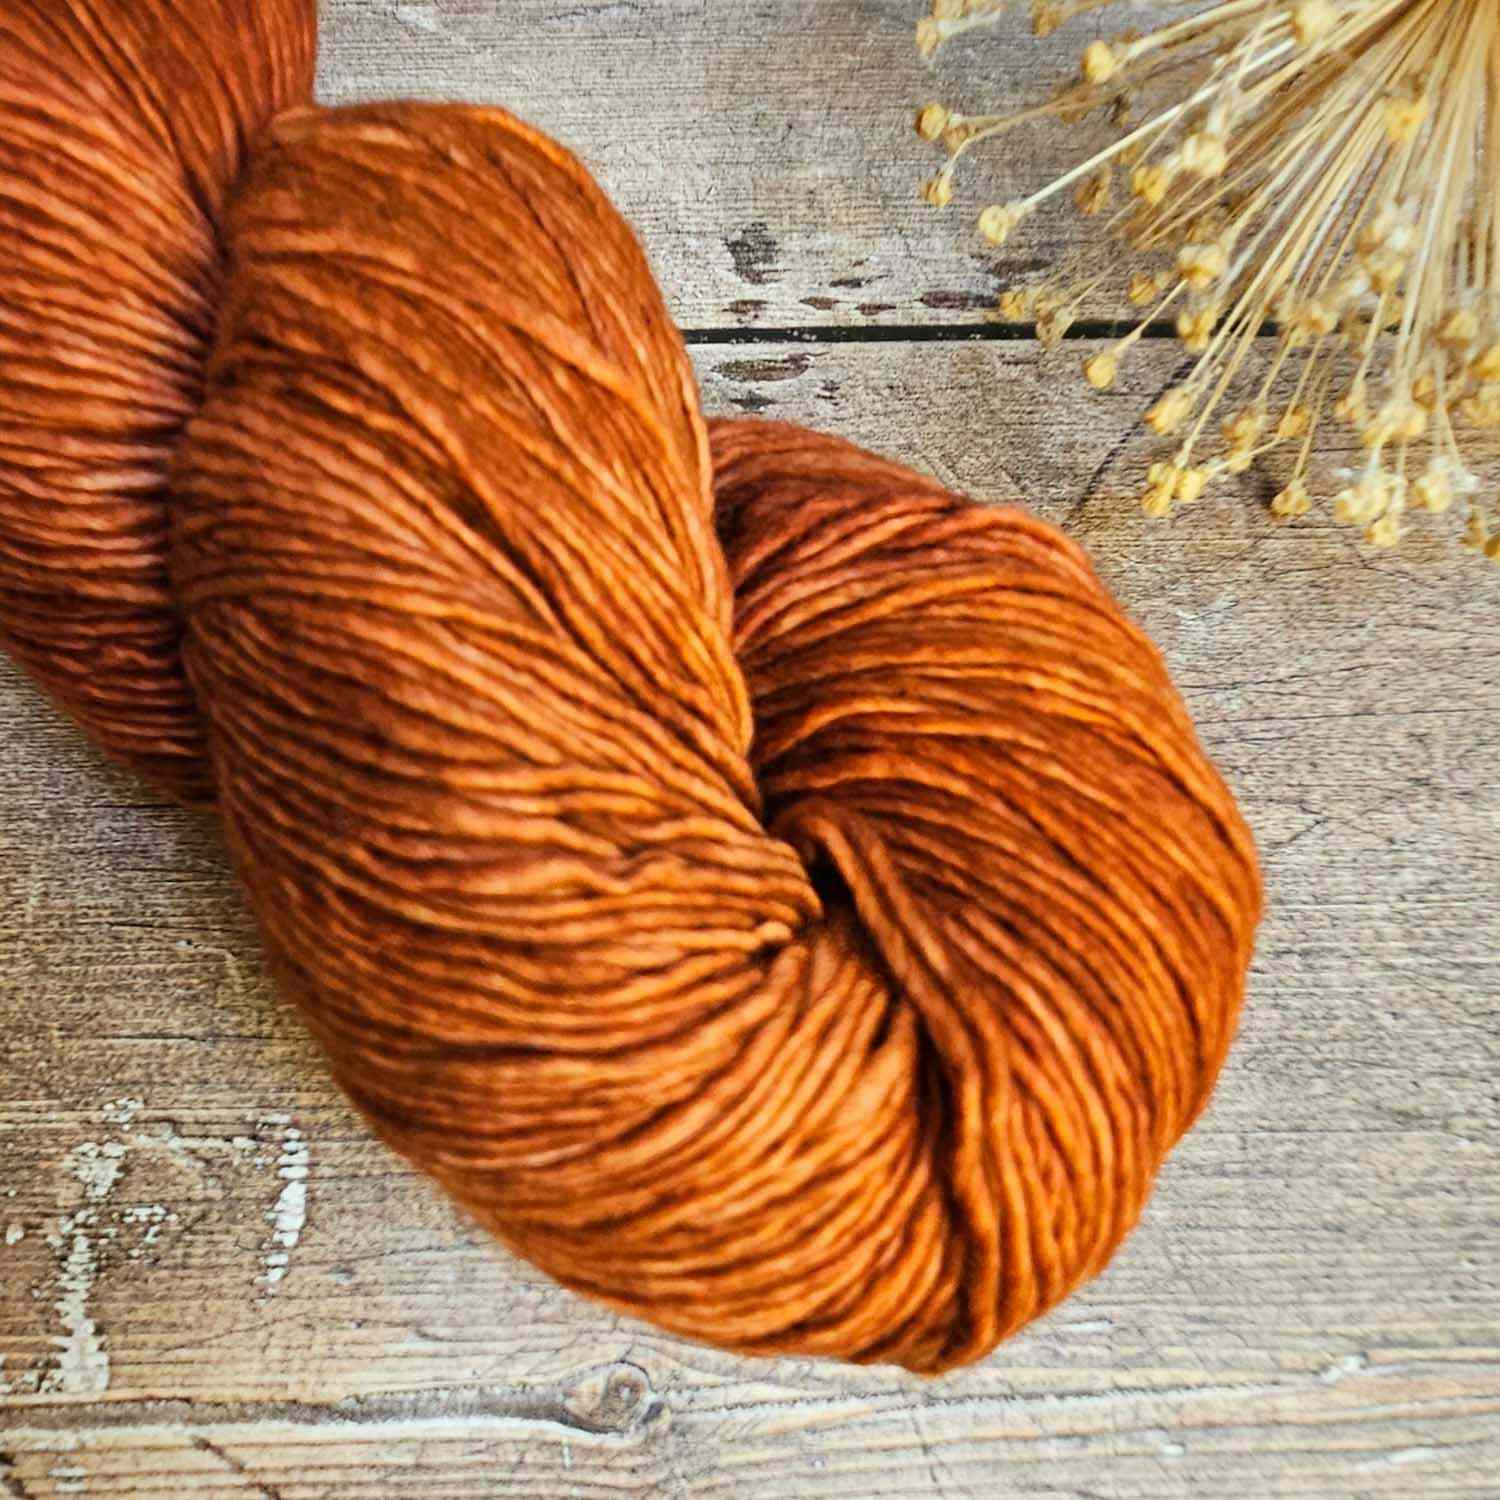 Malabrigo Mechita yarn 100g - Dried Orange